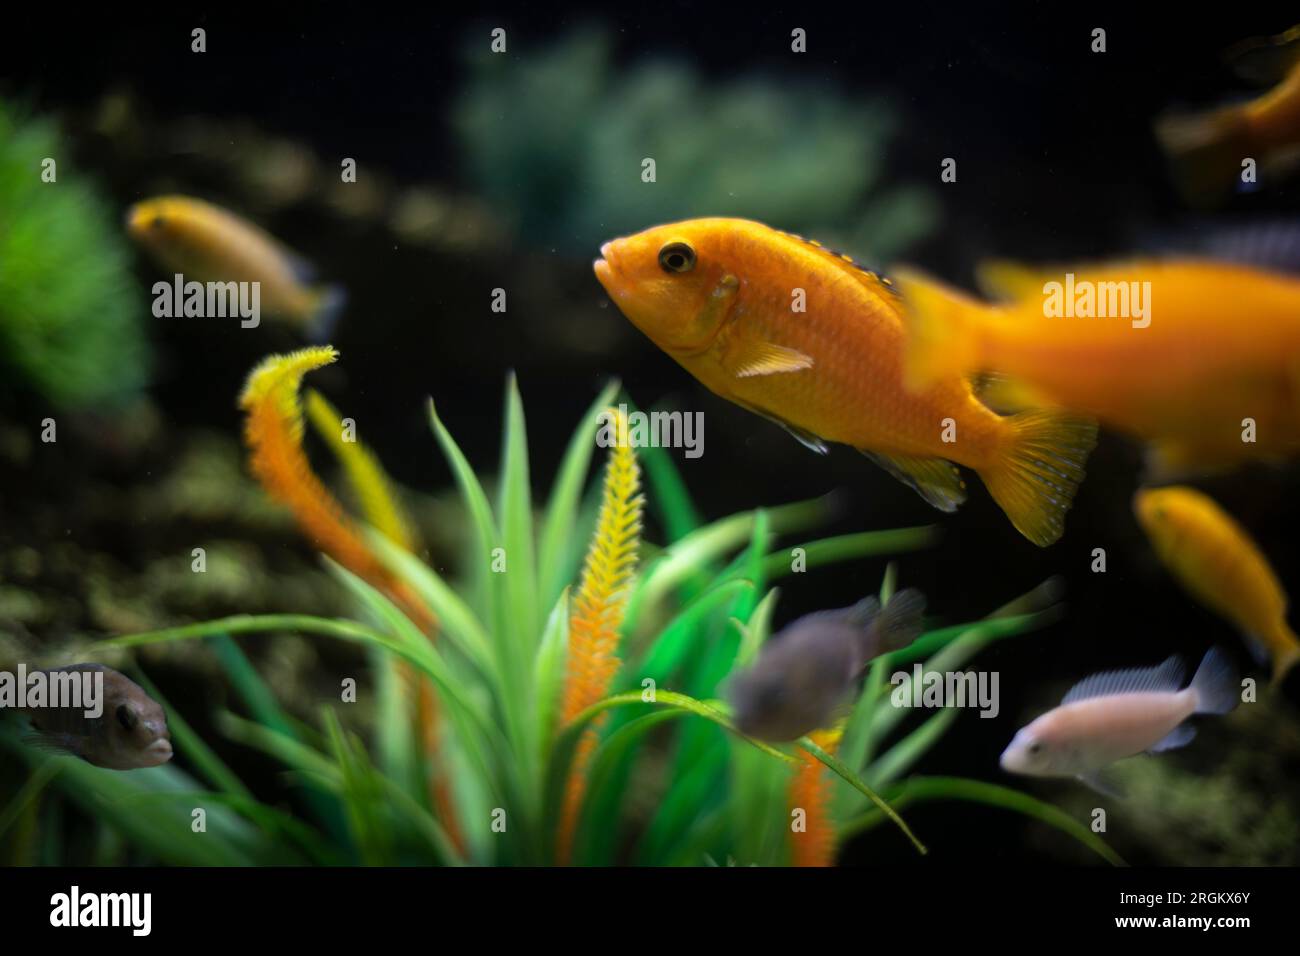 Fish in aquarium. Details of life in water. Fish swim. Clear aquarium glass. Stock Photo